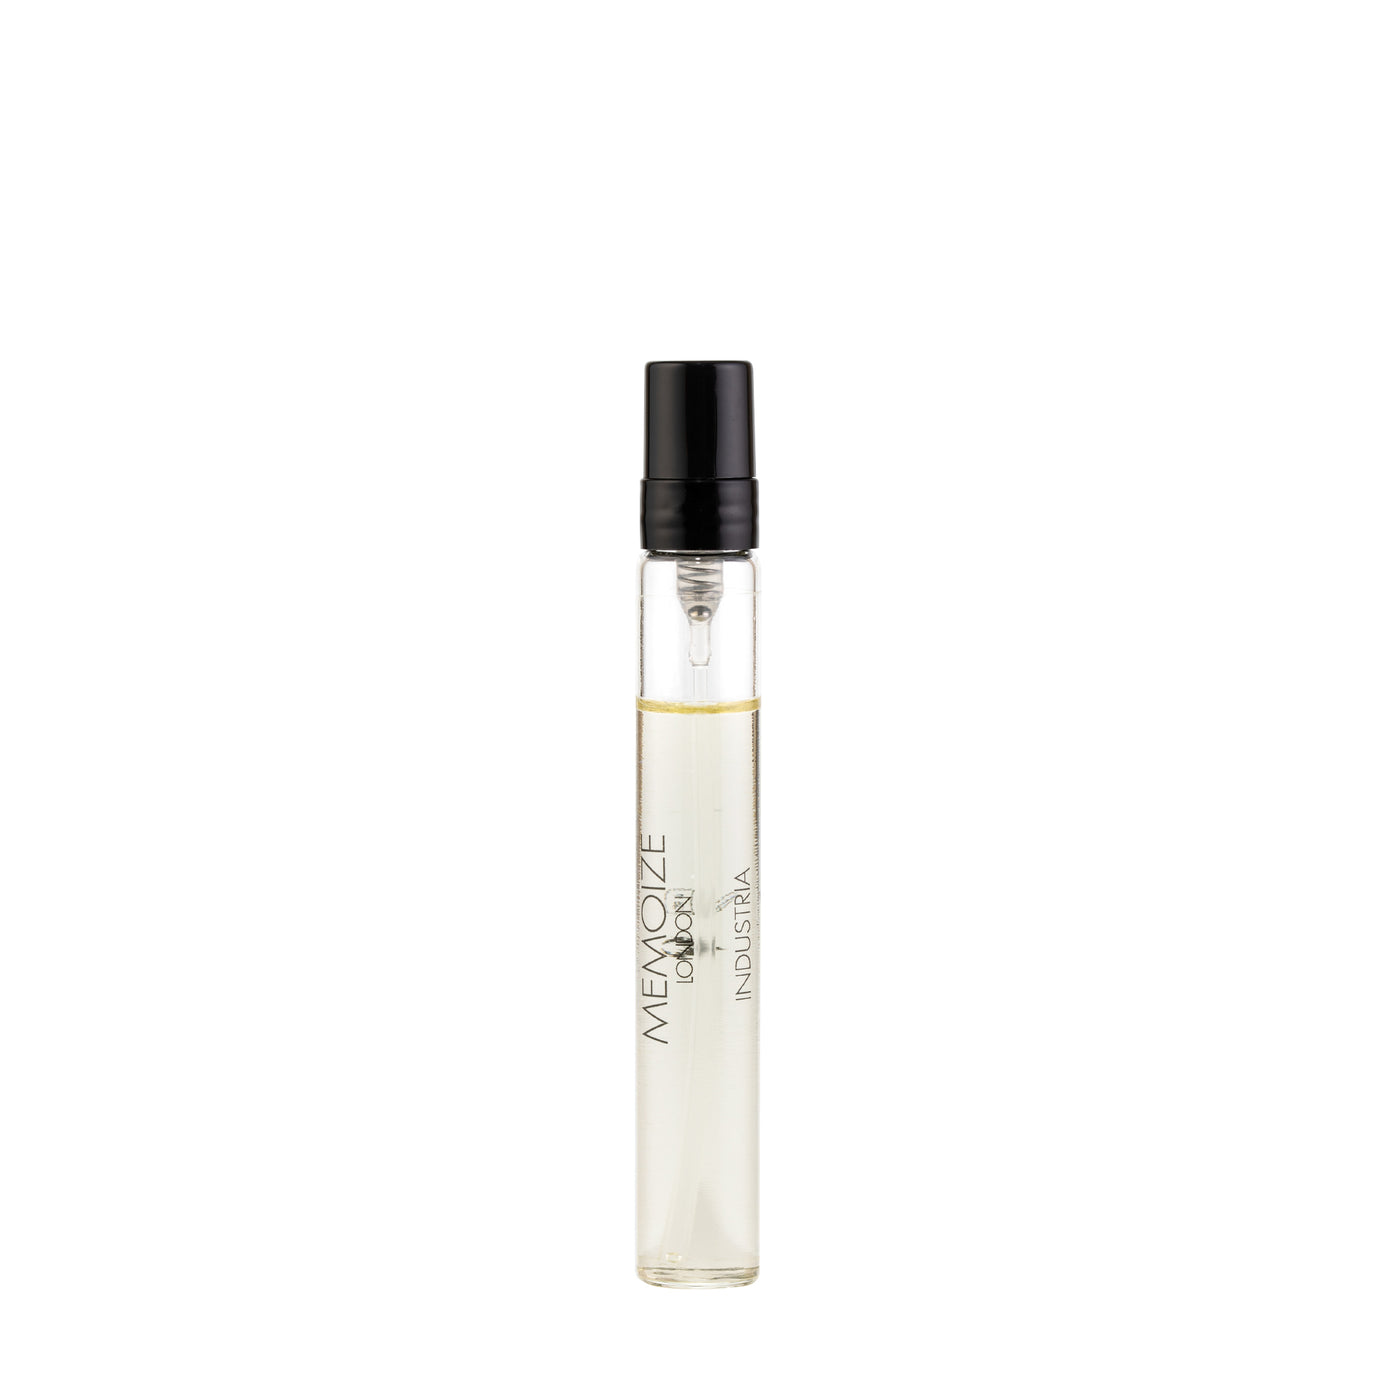 Memoize London INDUSTRIA Extait de Parfum 7.5ml